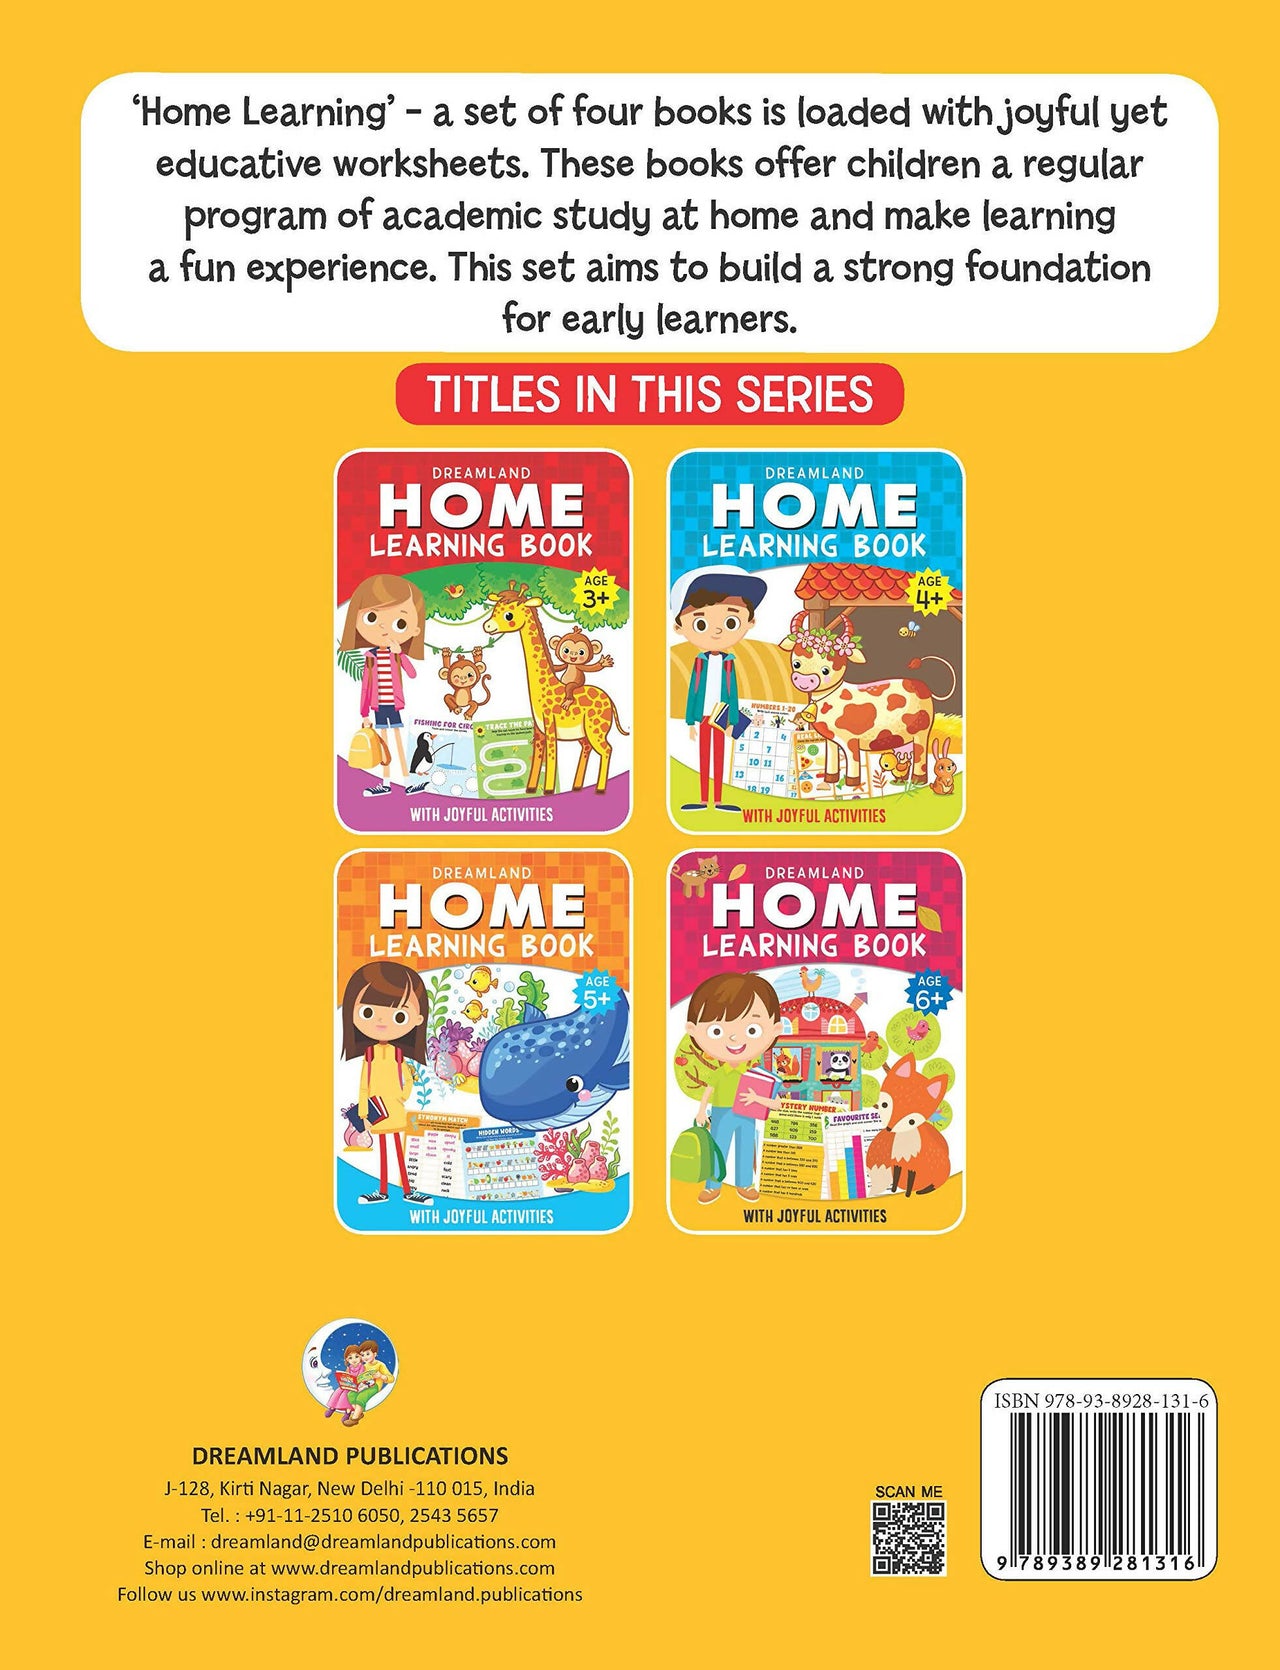 Dreamland Home Learning Book With Joyful Activities - 6+ : Children Interactive & Activity Book - Distacart